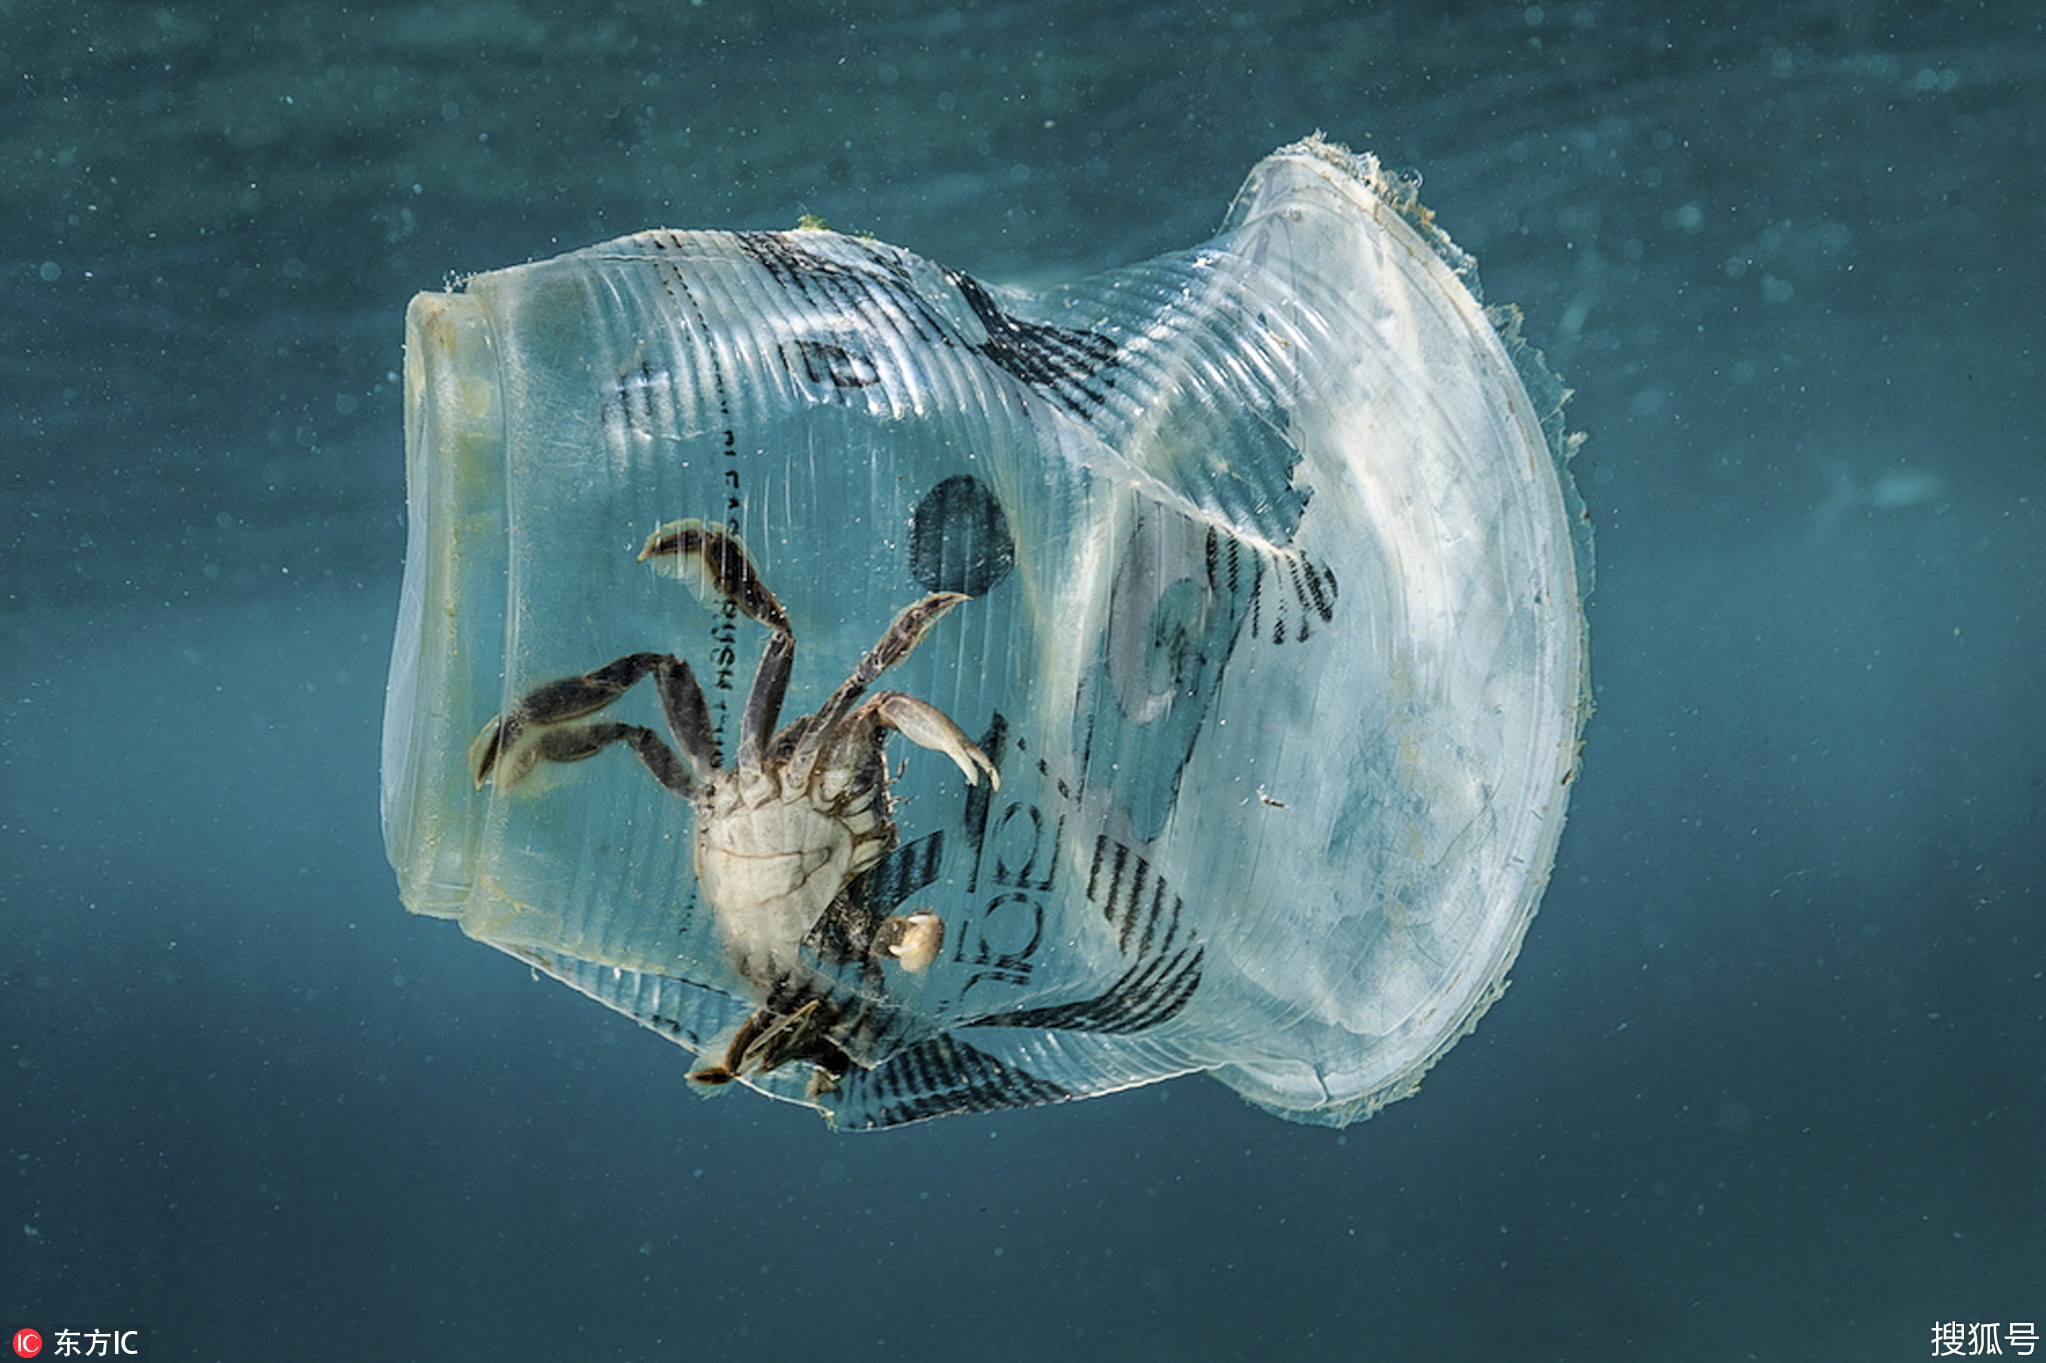 菲律宾:塑料垃圾污染严重 海洋动物面临致命陷阱